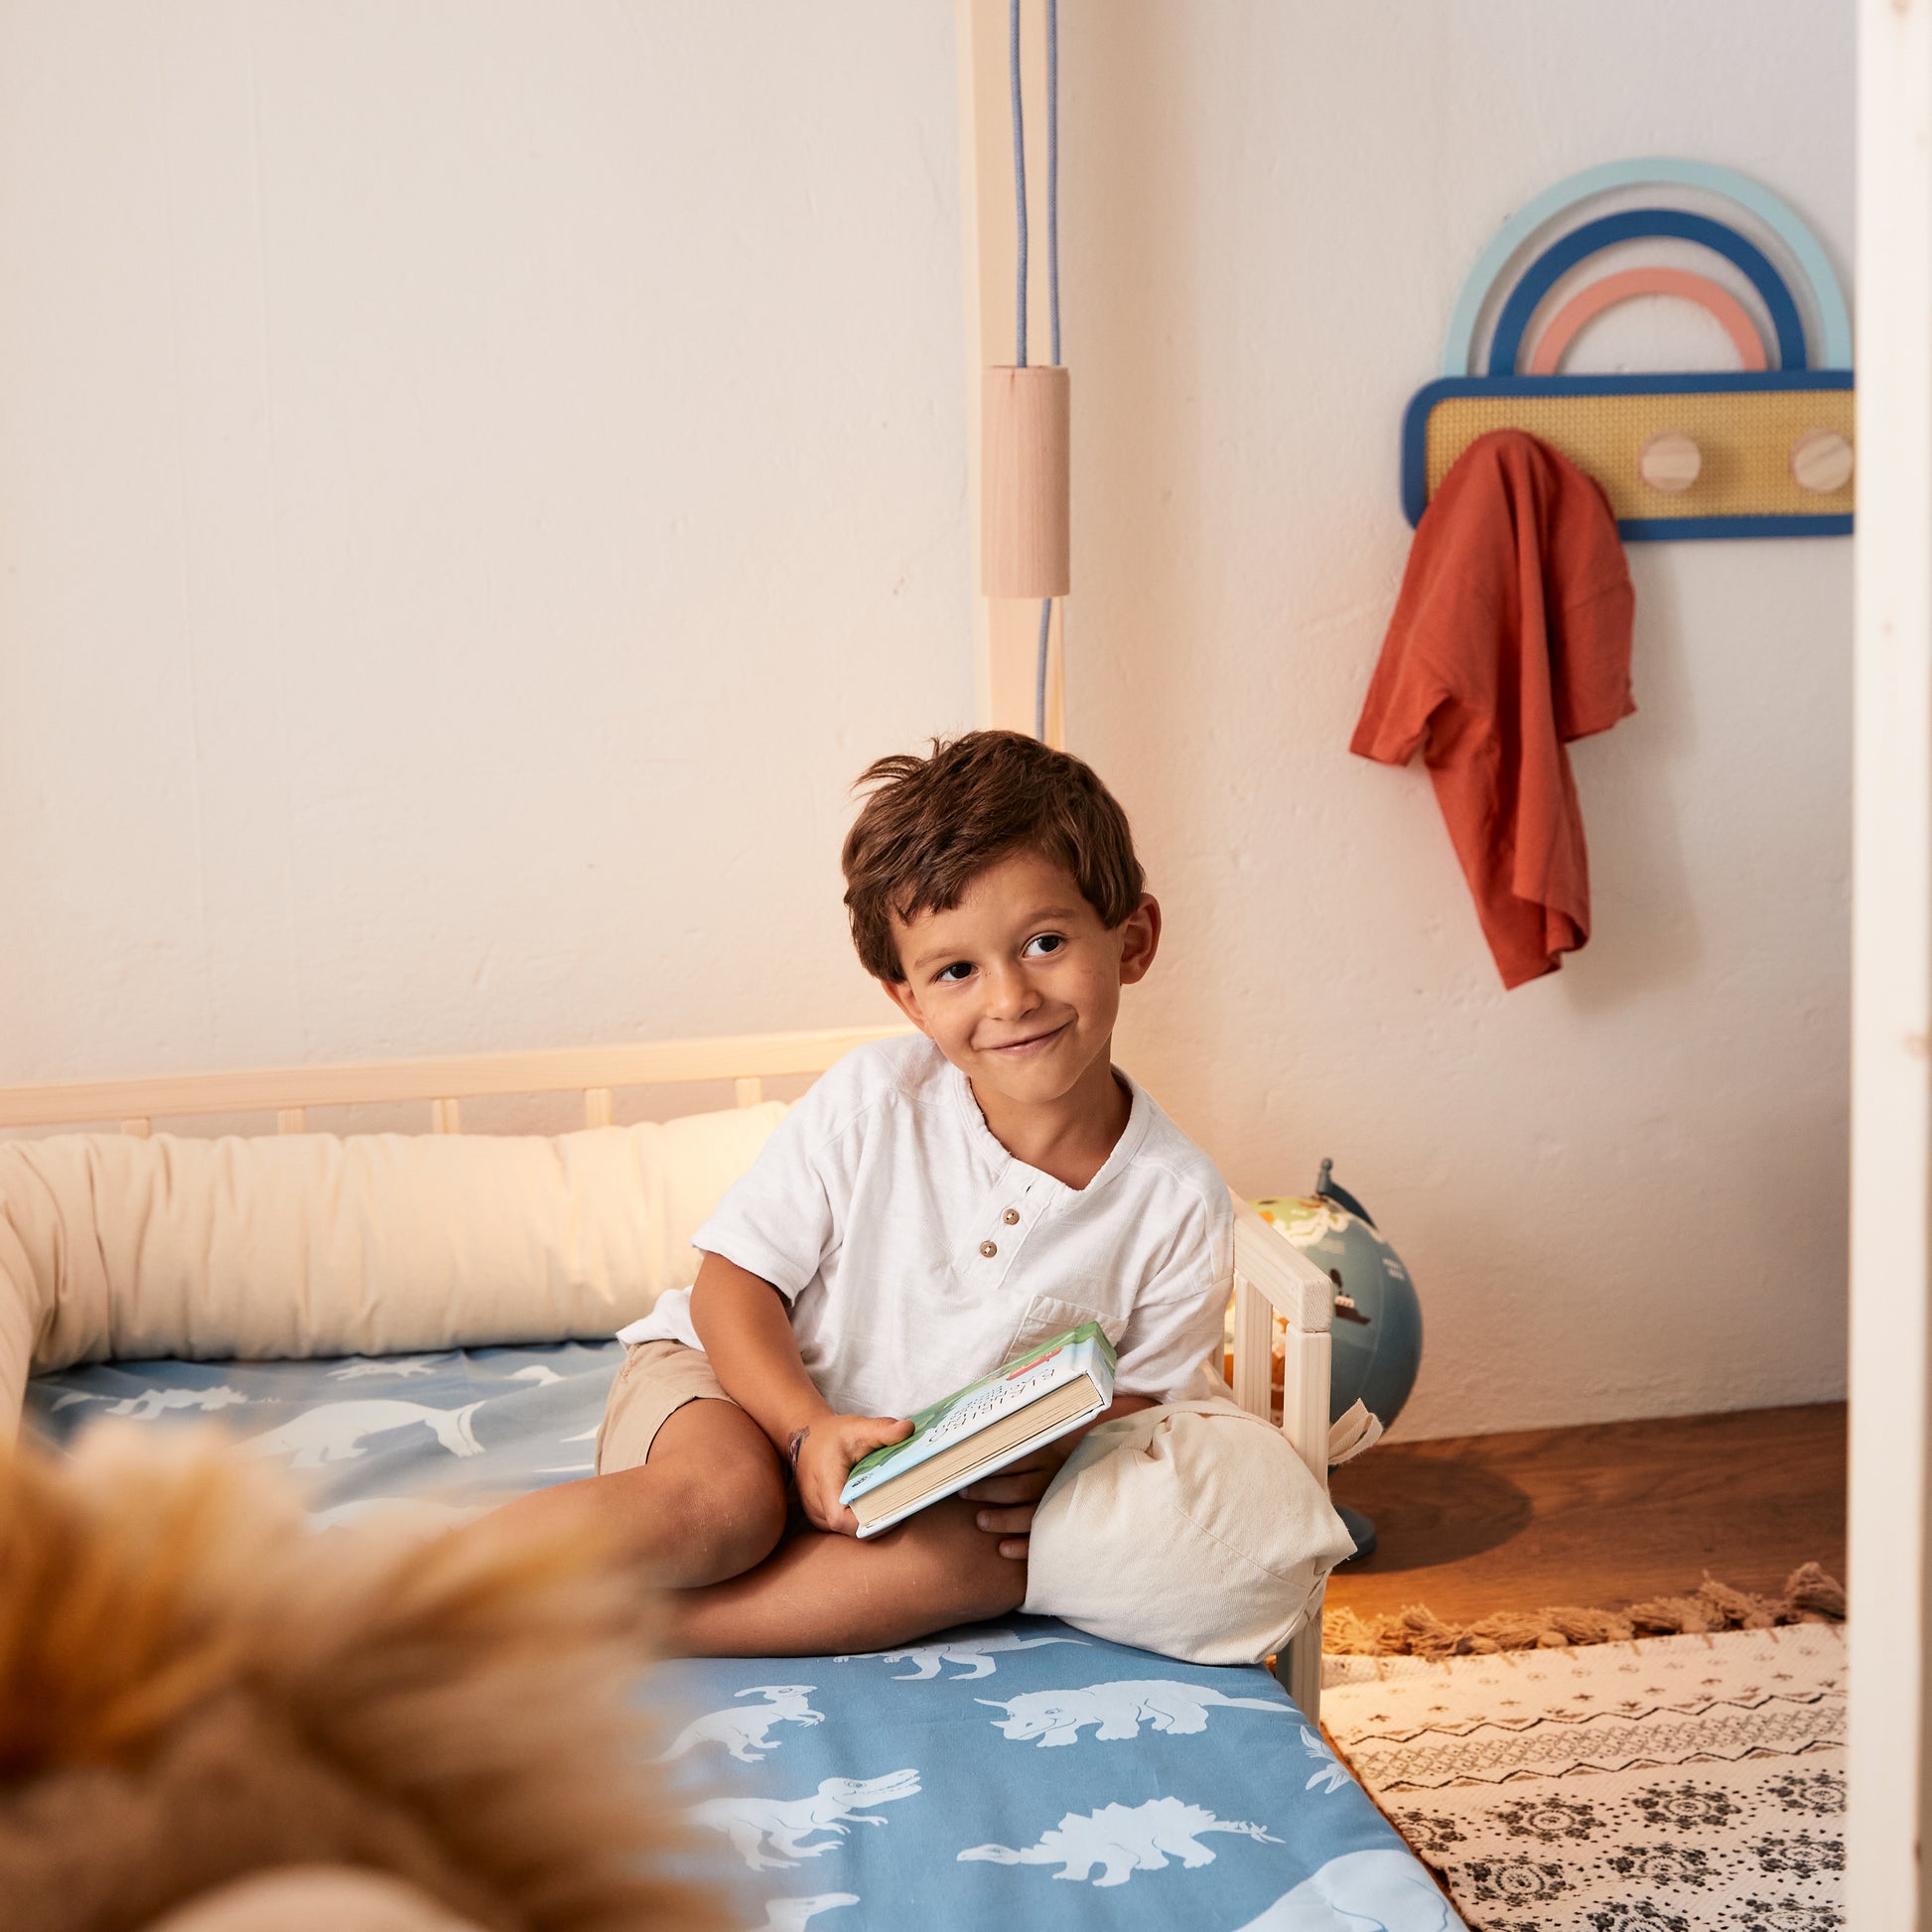 bambino legge su letto montessoriano con materasso evolutivo in schiume ecologiche a base d'acqua senza CFC e senza formaldeide.